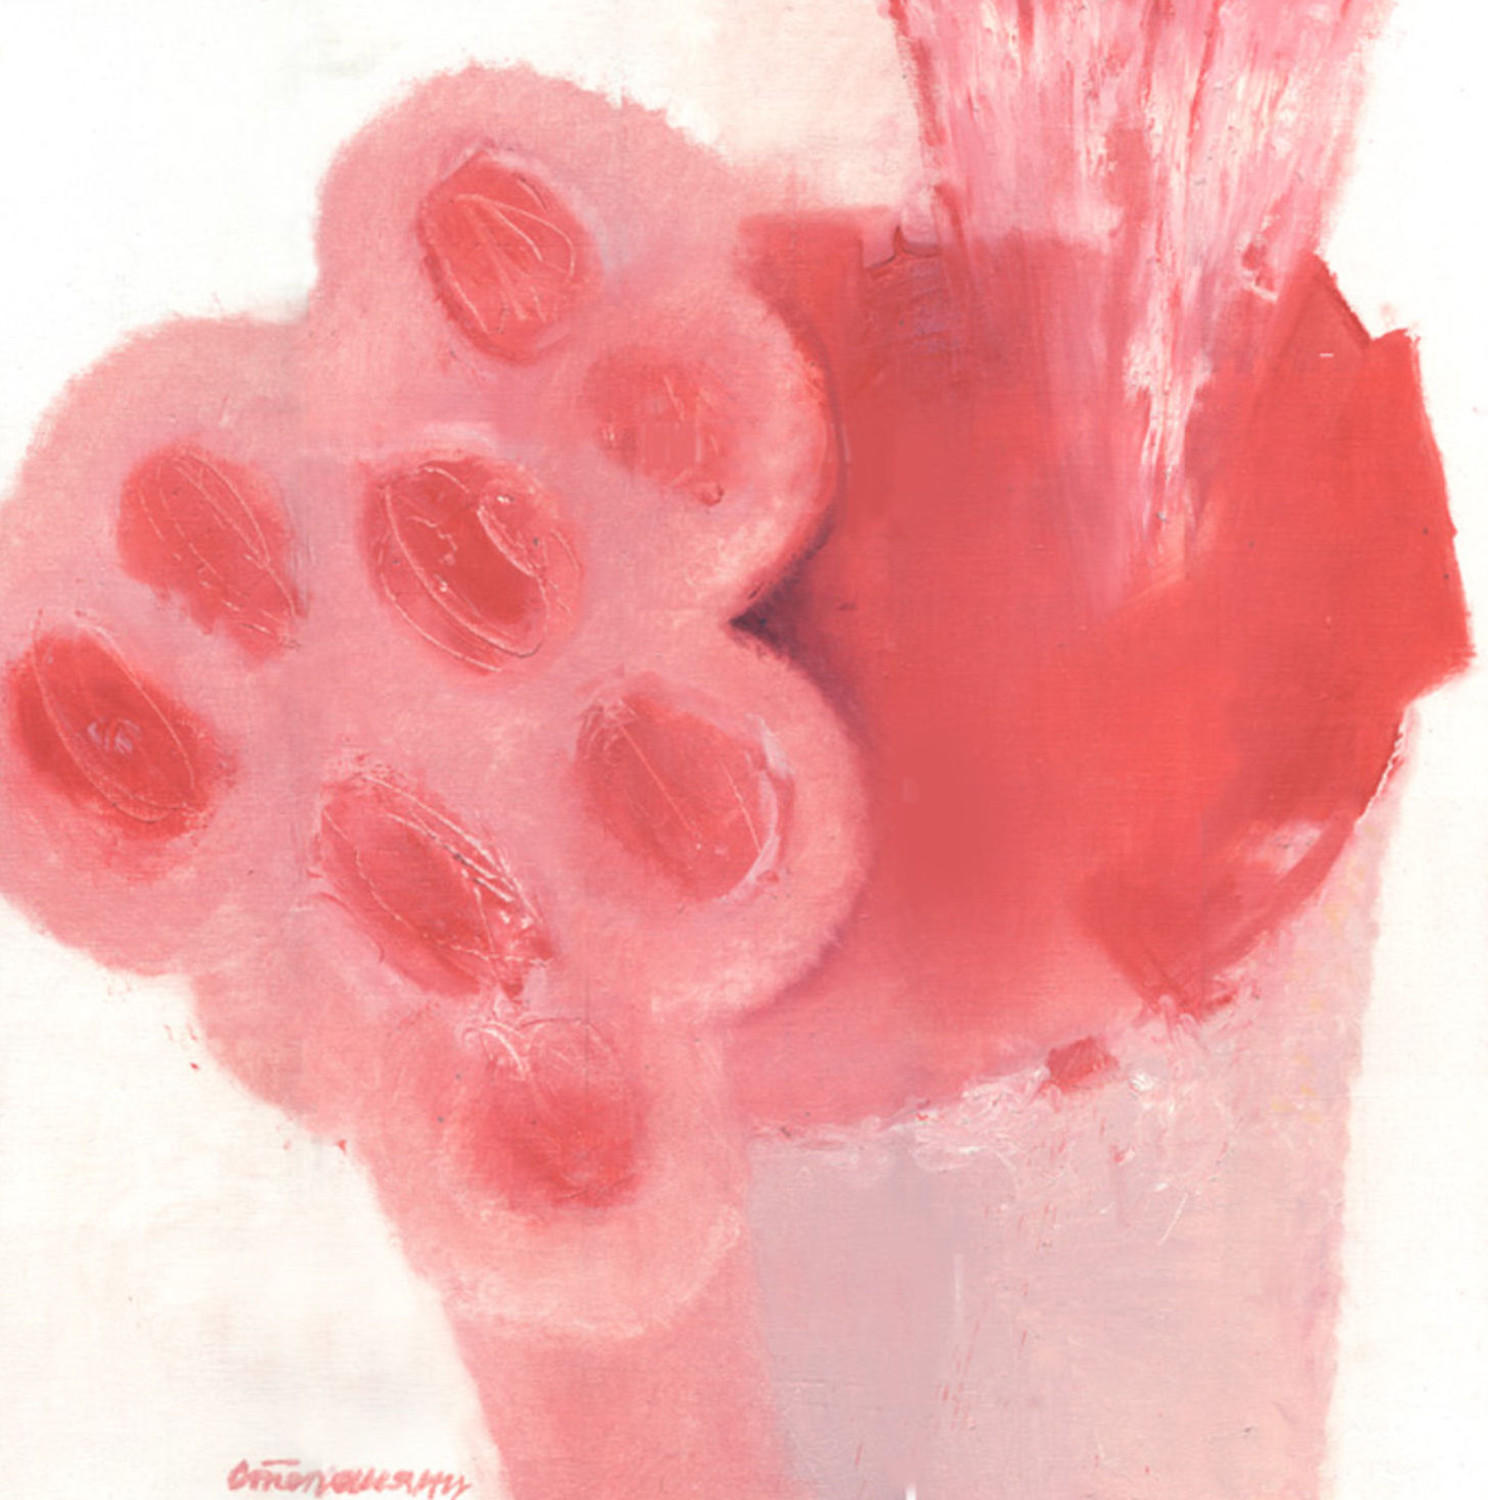 Красные цветы в красном ведре (Живопись). Карен Степанянц. 2004, холст, масло, 100x100